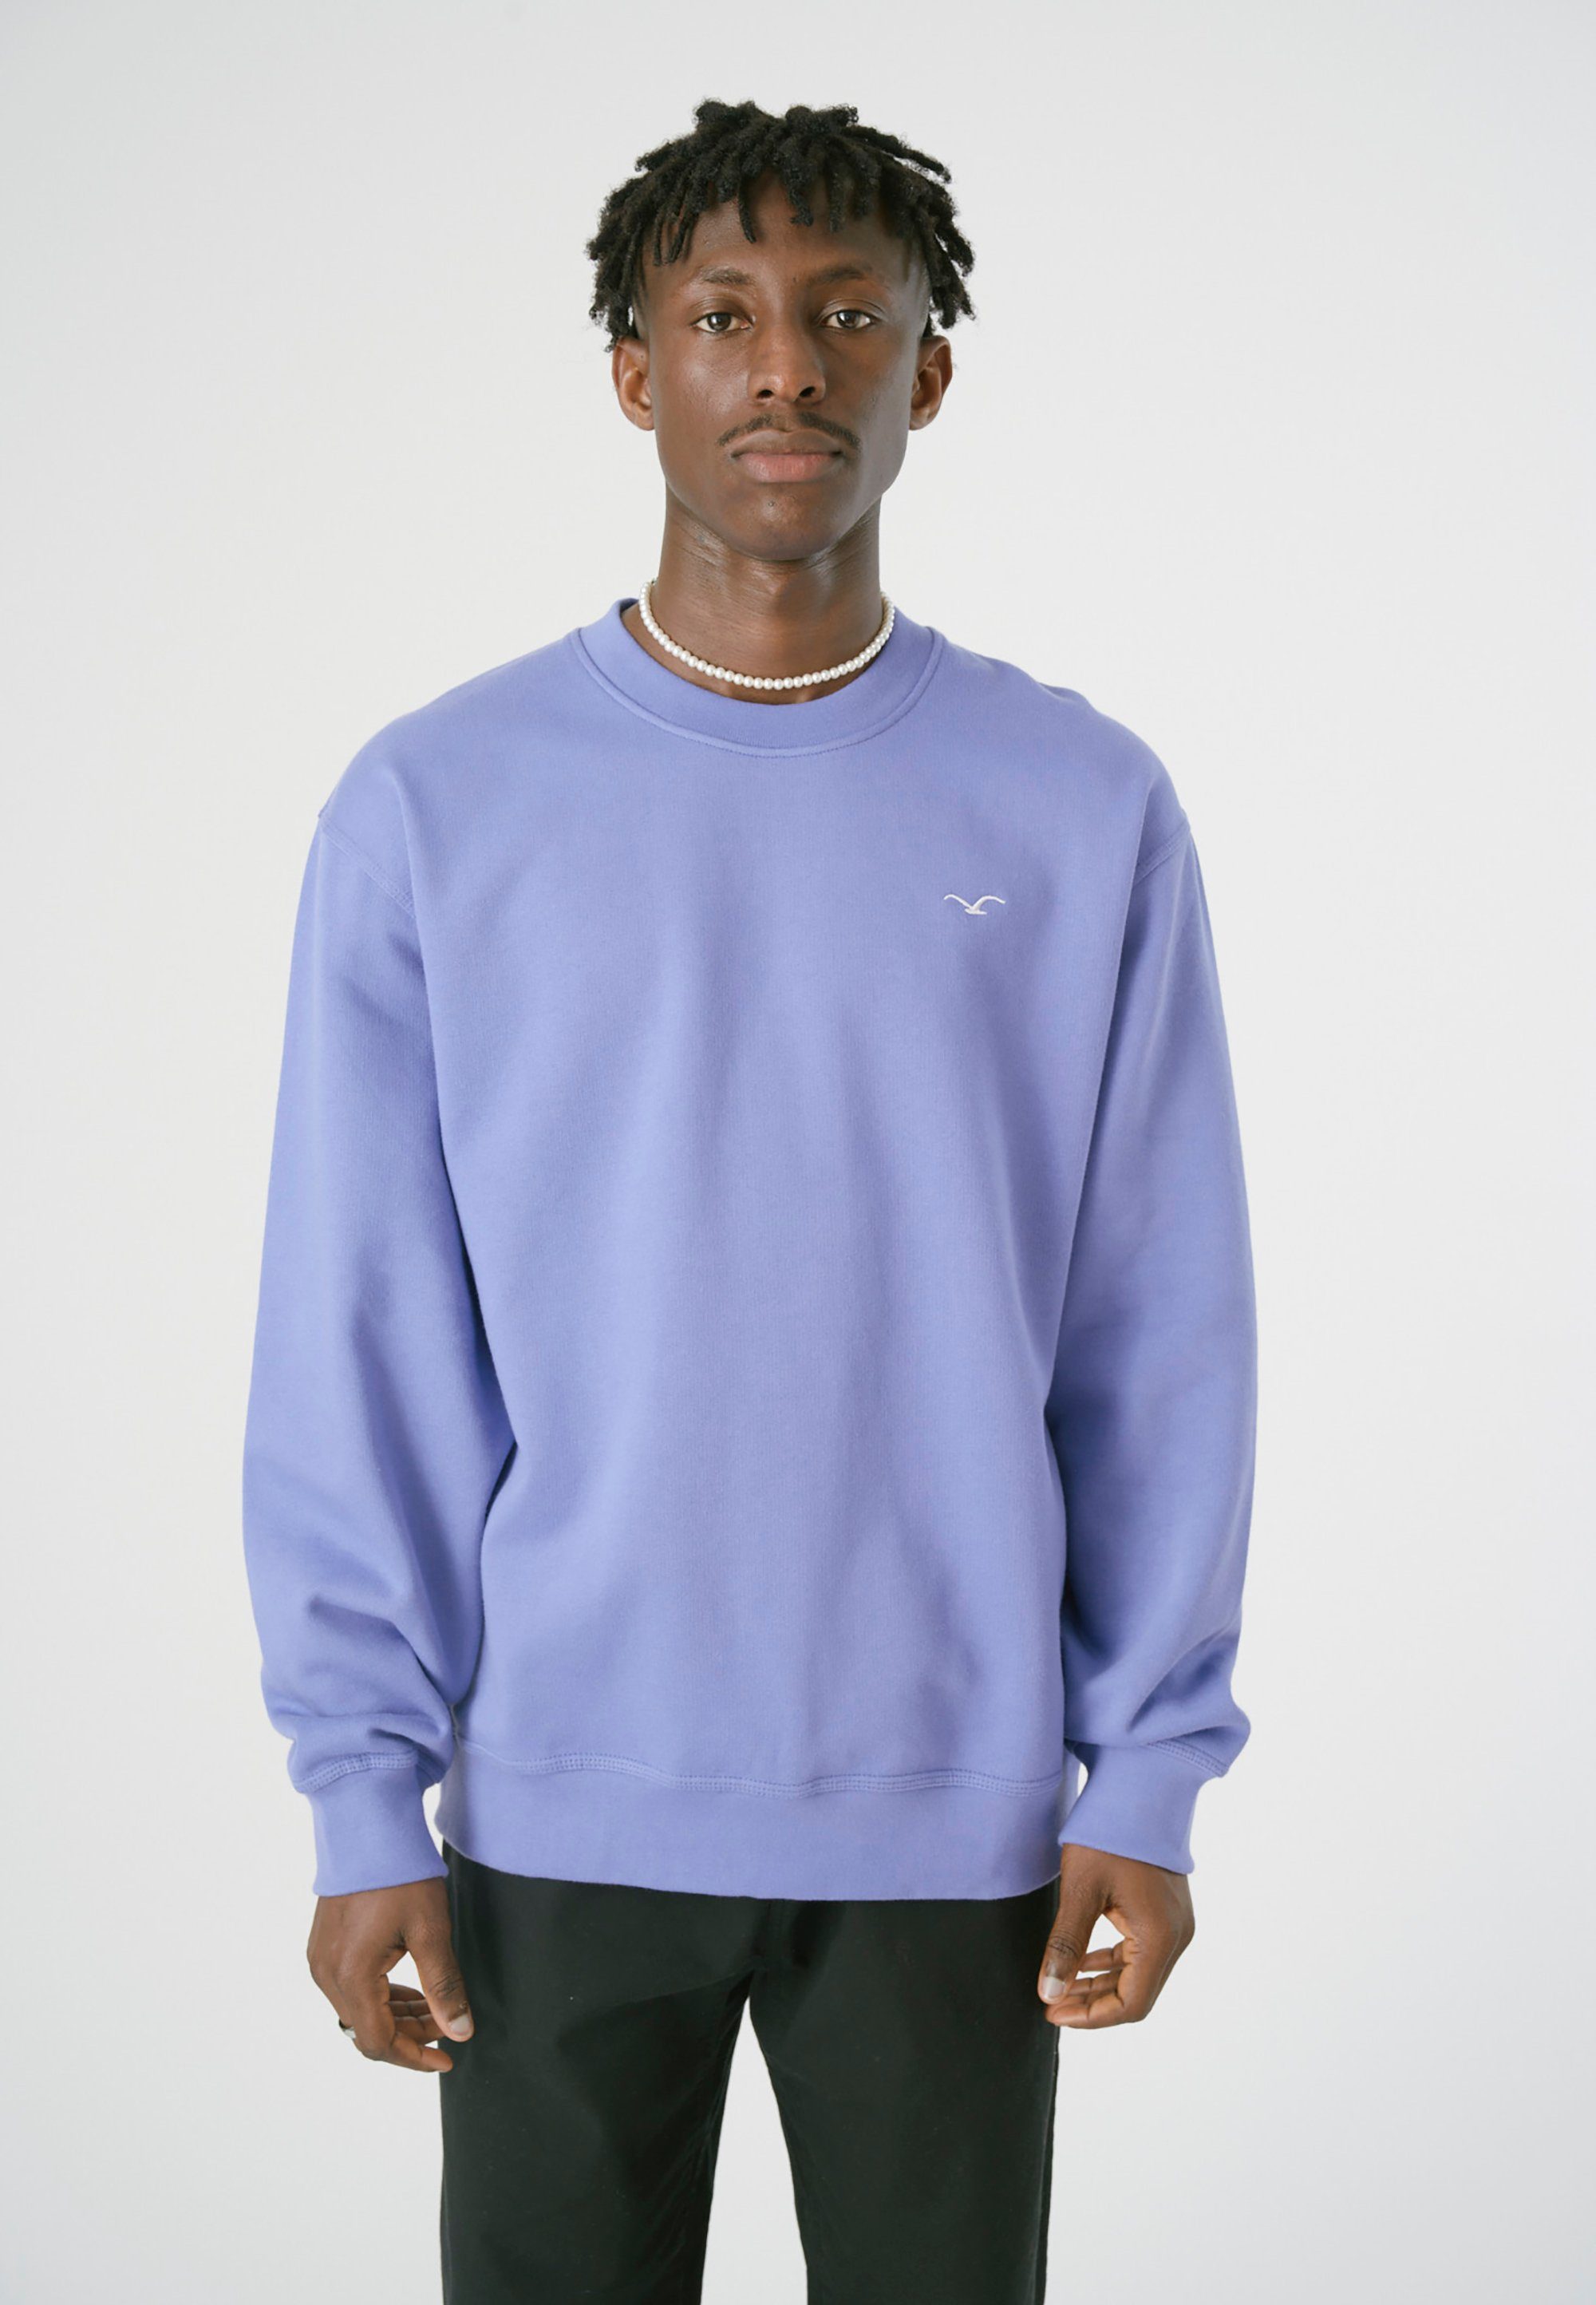 Stylisches kleiner für Sweatshirt Boxy mit Möwenstickerei, von Cleptomanicx Sweatshirt Herren Cleptomanicx Ligull